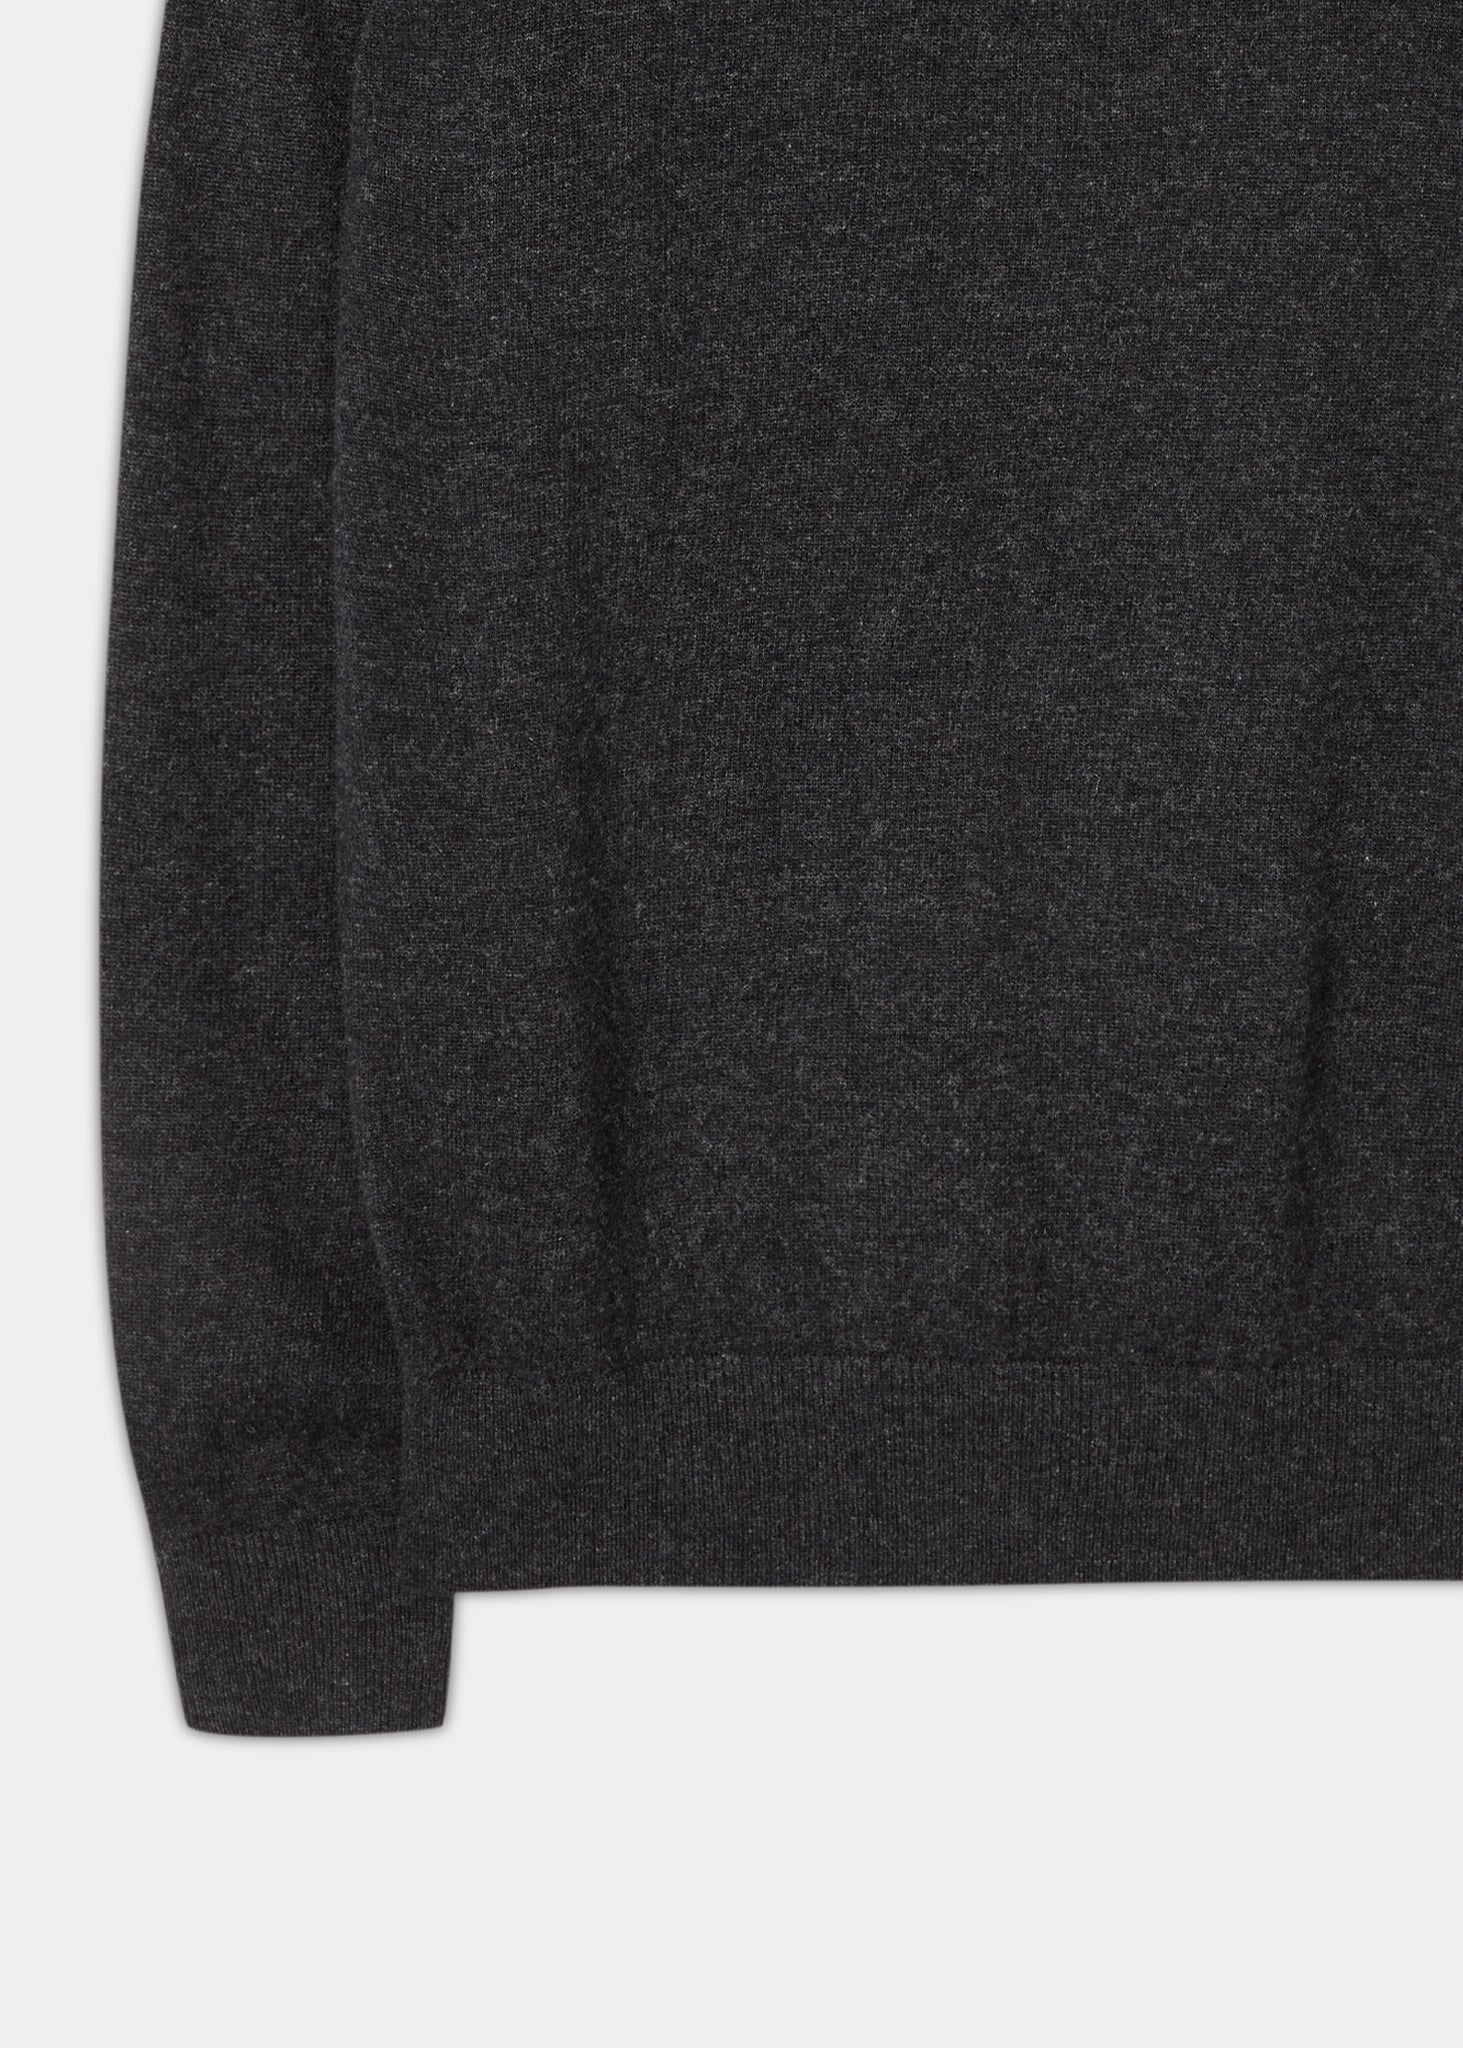 Geelong-Wool-Half-Zip-Sweater-Charcoal